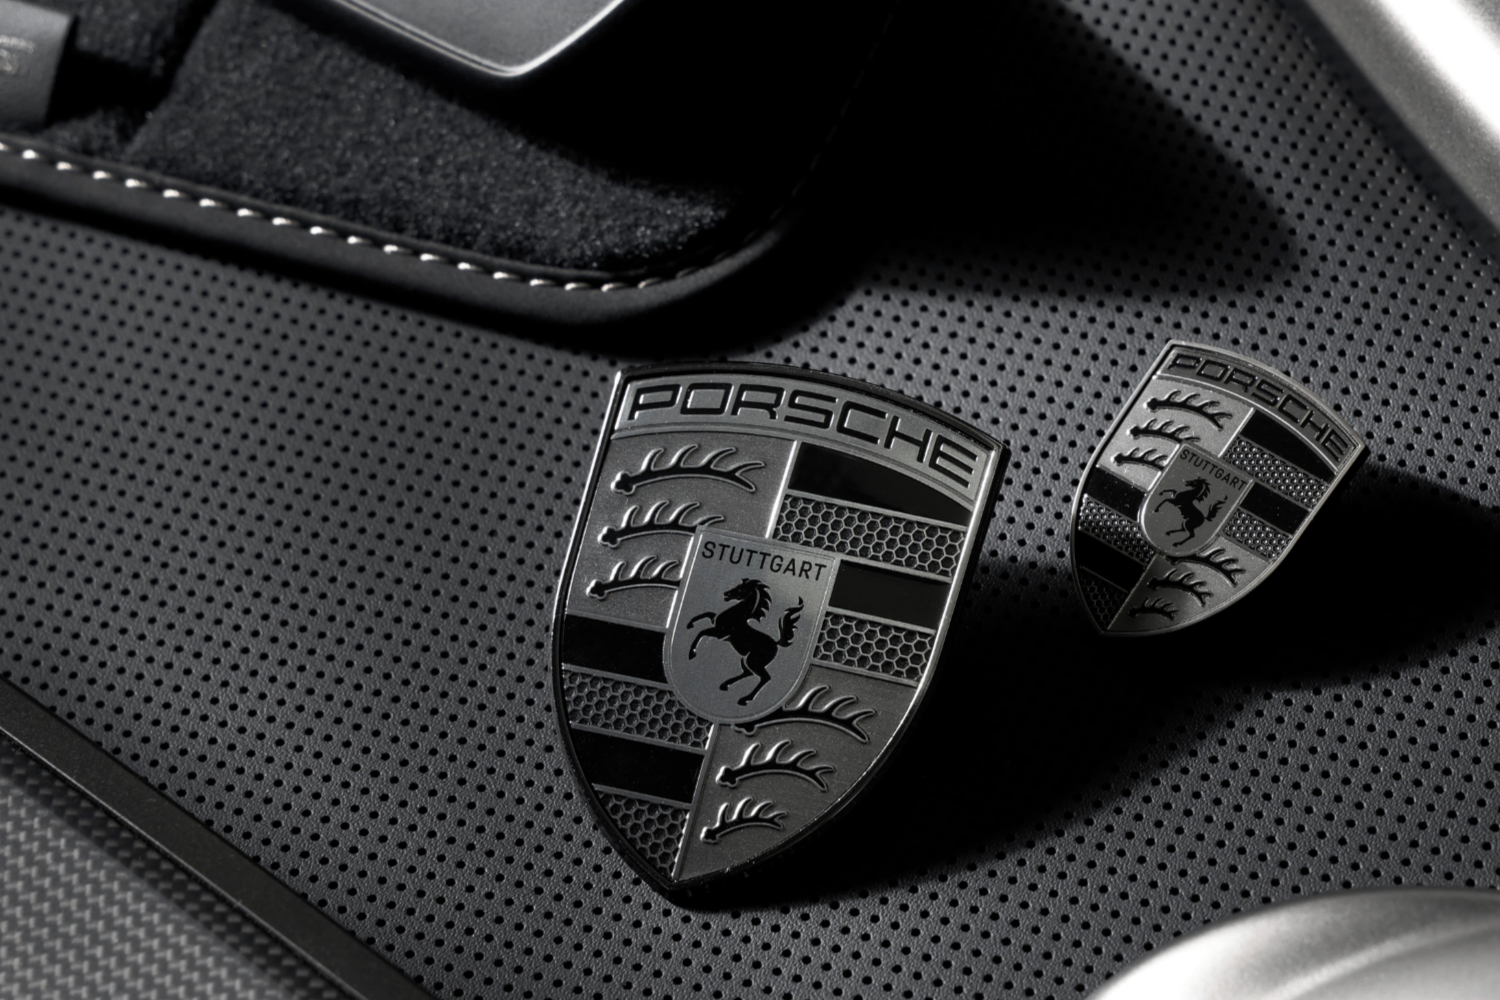 Porsche announces subtle new look for Turbo models. Image by Porsche.